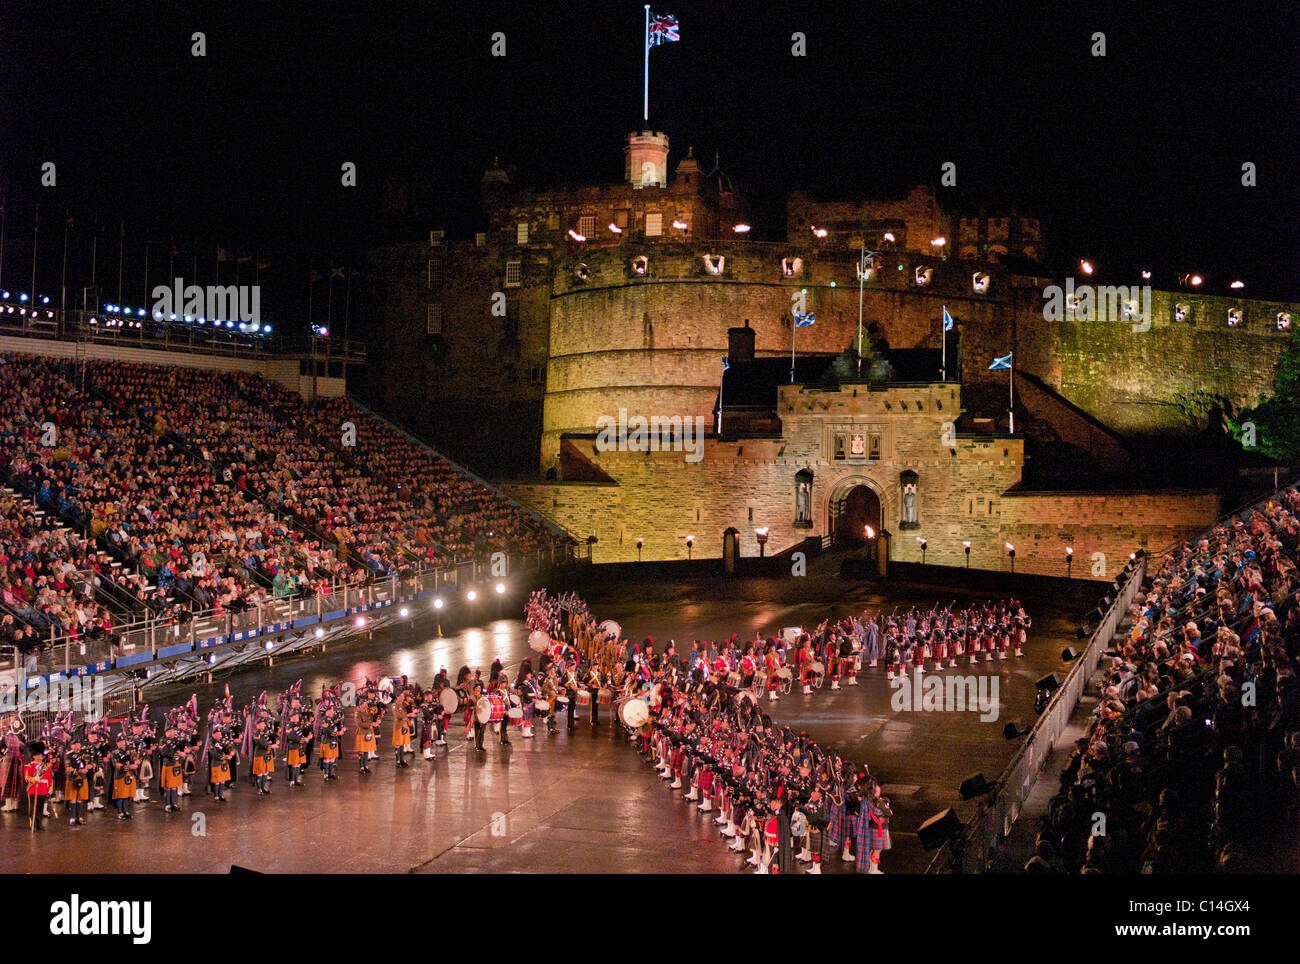 Military Tattoo Edinburgh Castle: Hãy tận hưởng cảm giác bùng nổ khi xem Military Tattoo của Edinburgh Castle! Những màn biểu diễn máu lửa cùng nhịp điệu của trống và chỉ huy sẽ đưa bạn đến với không gian của quân đội. Đón xem hình ảnh liên quan để trải nghiệm ngay!